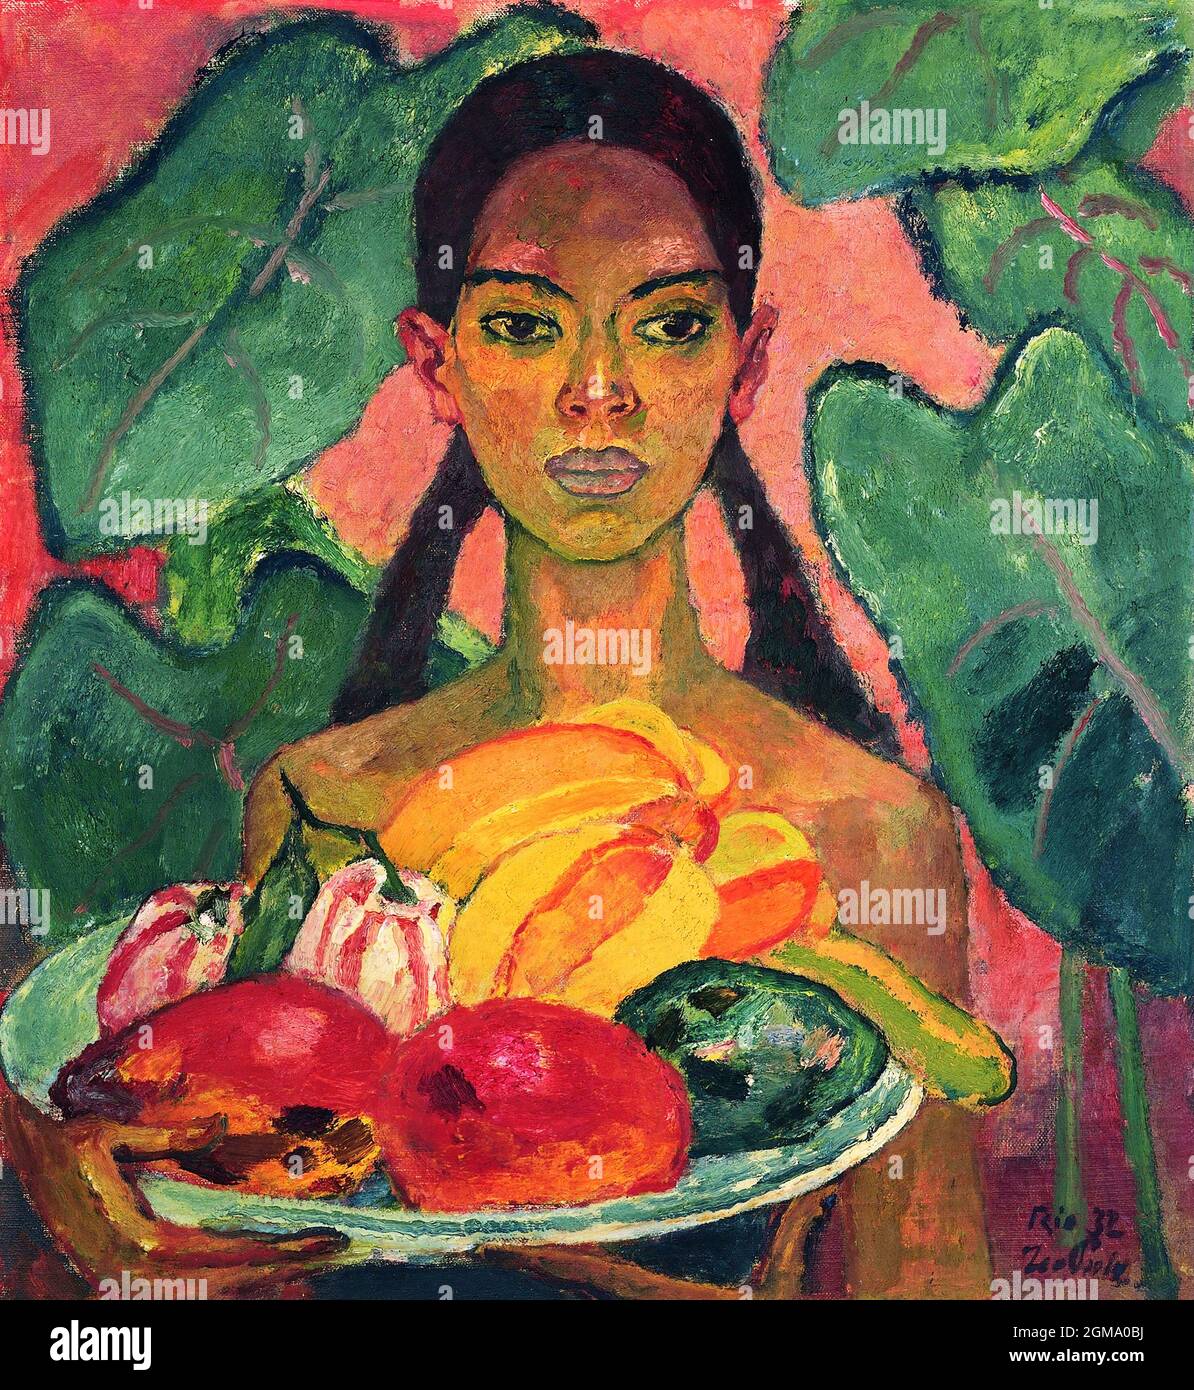 Donna indiana con frutta (Halbindianerin mit Früchten) dell'artista tirolese, Leo Putz (1869-1940), olio su tela, 1932 Foto Stock